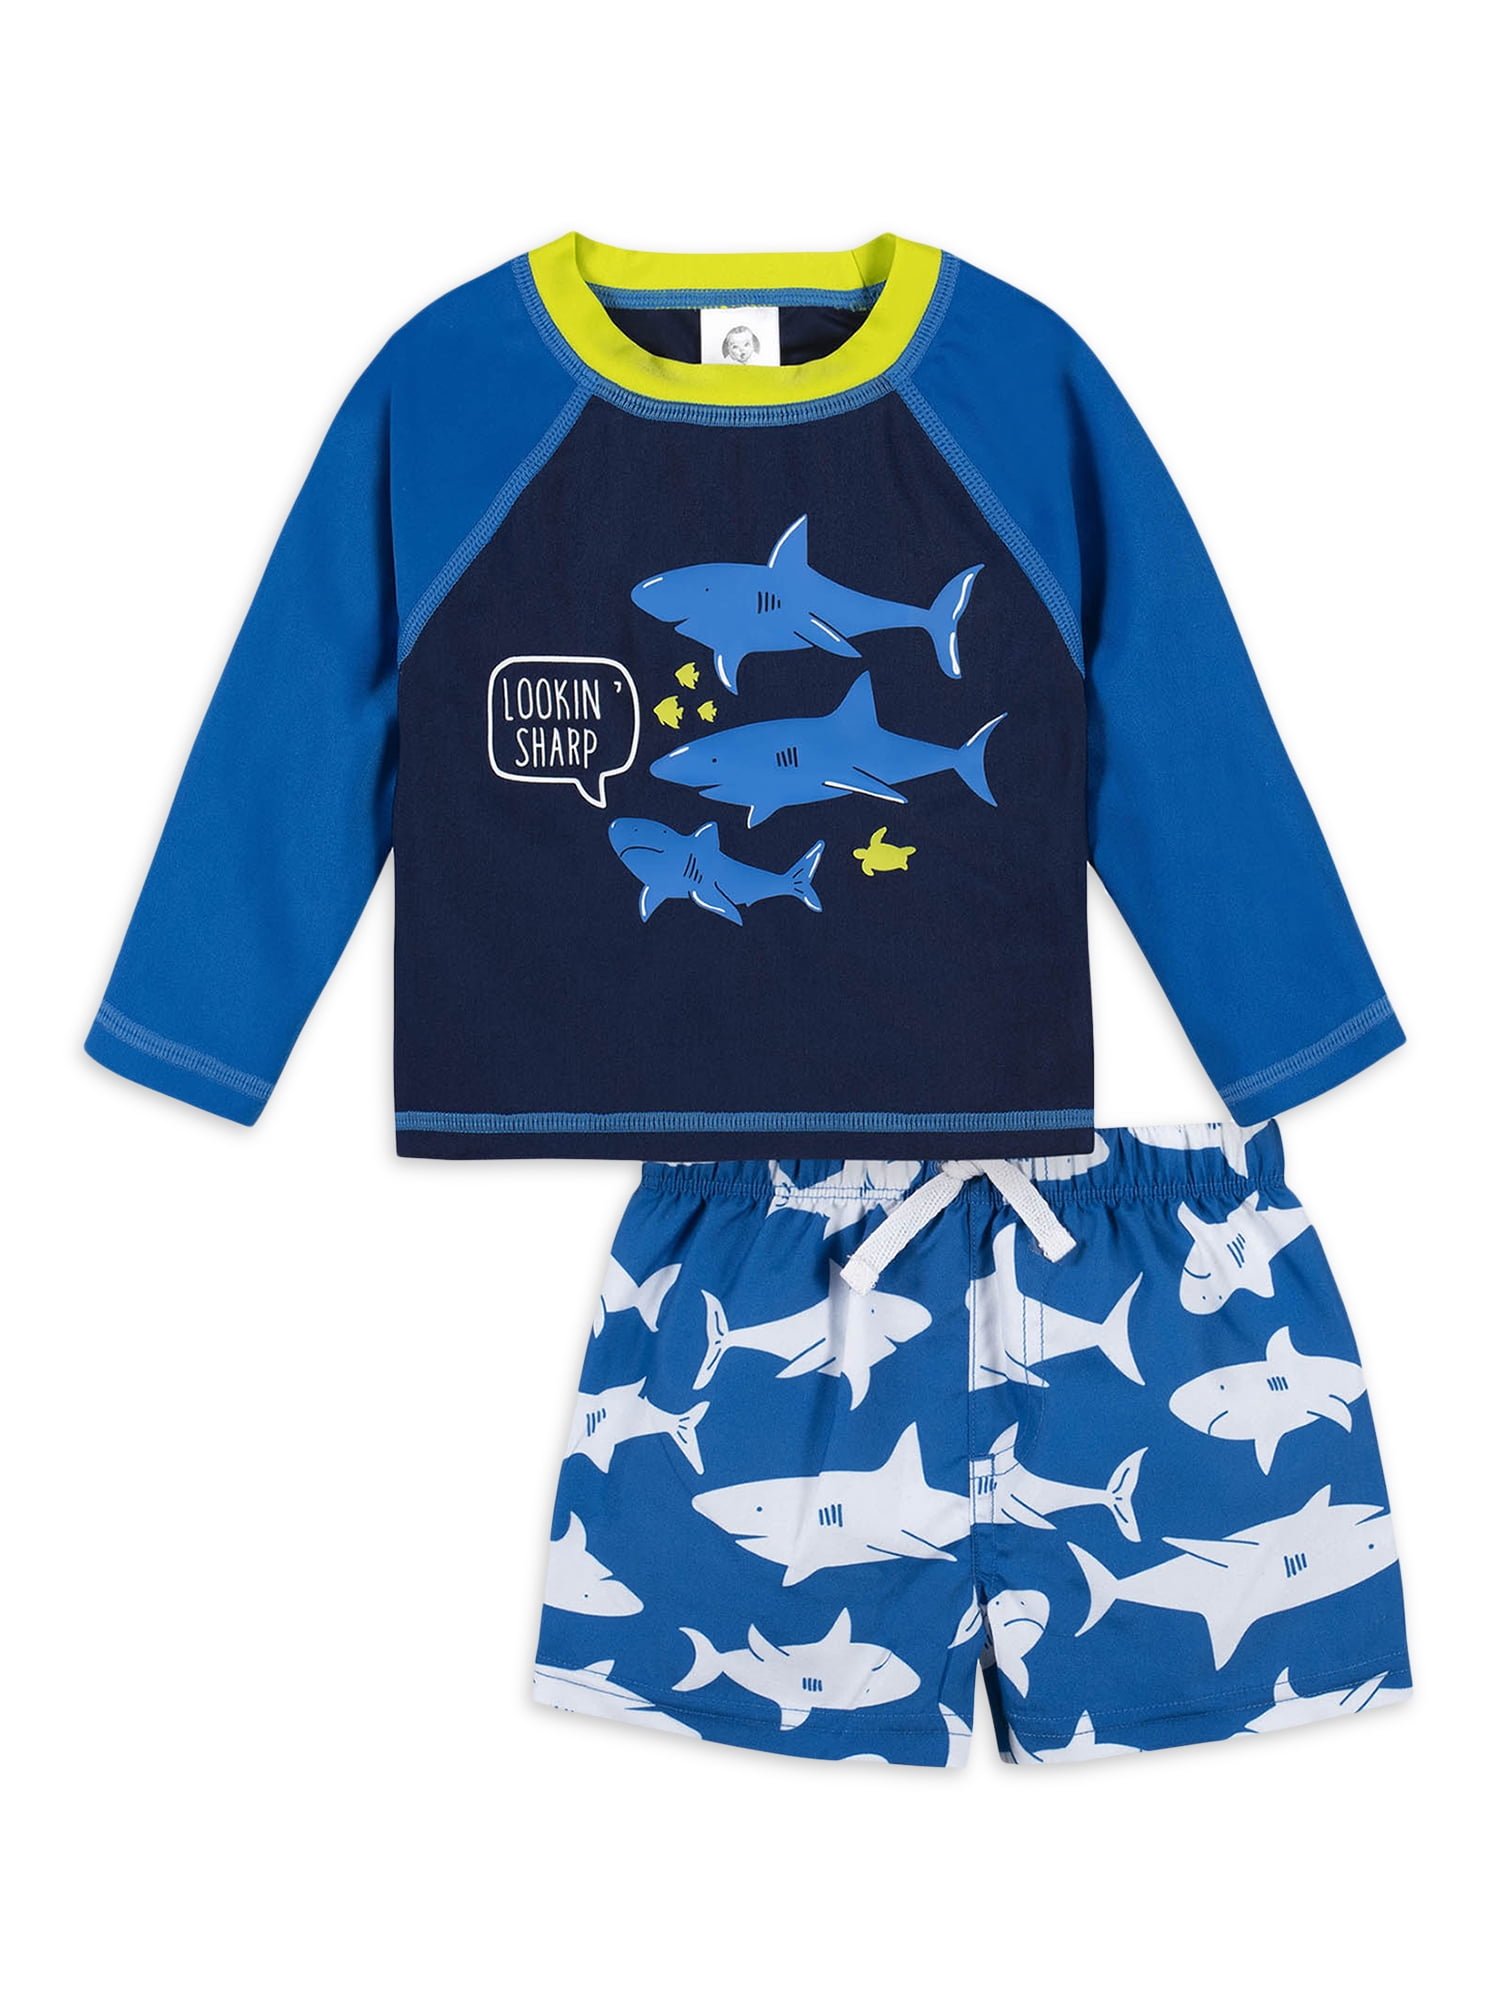 Swim Shirt and Trunks Swimwear Set Freestyle Revolution Little Boys Rashguard Set Infant/Toddler/Little Boys 